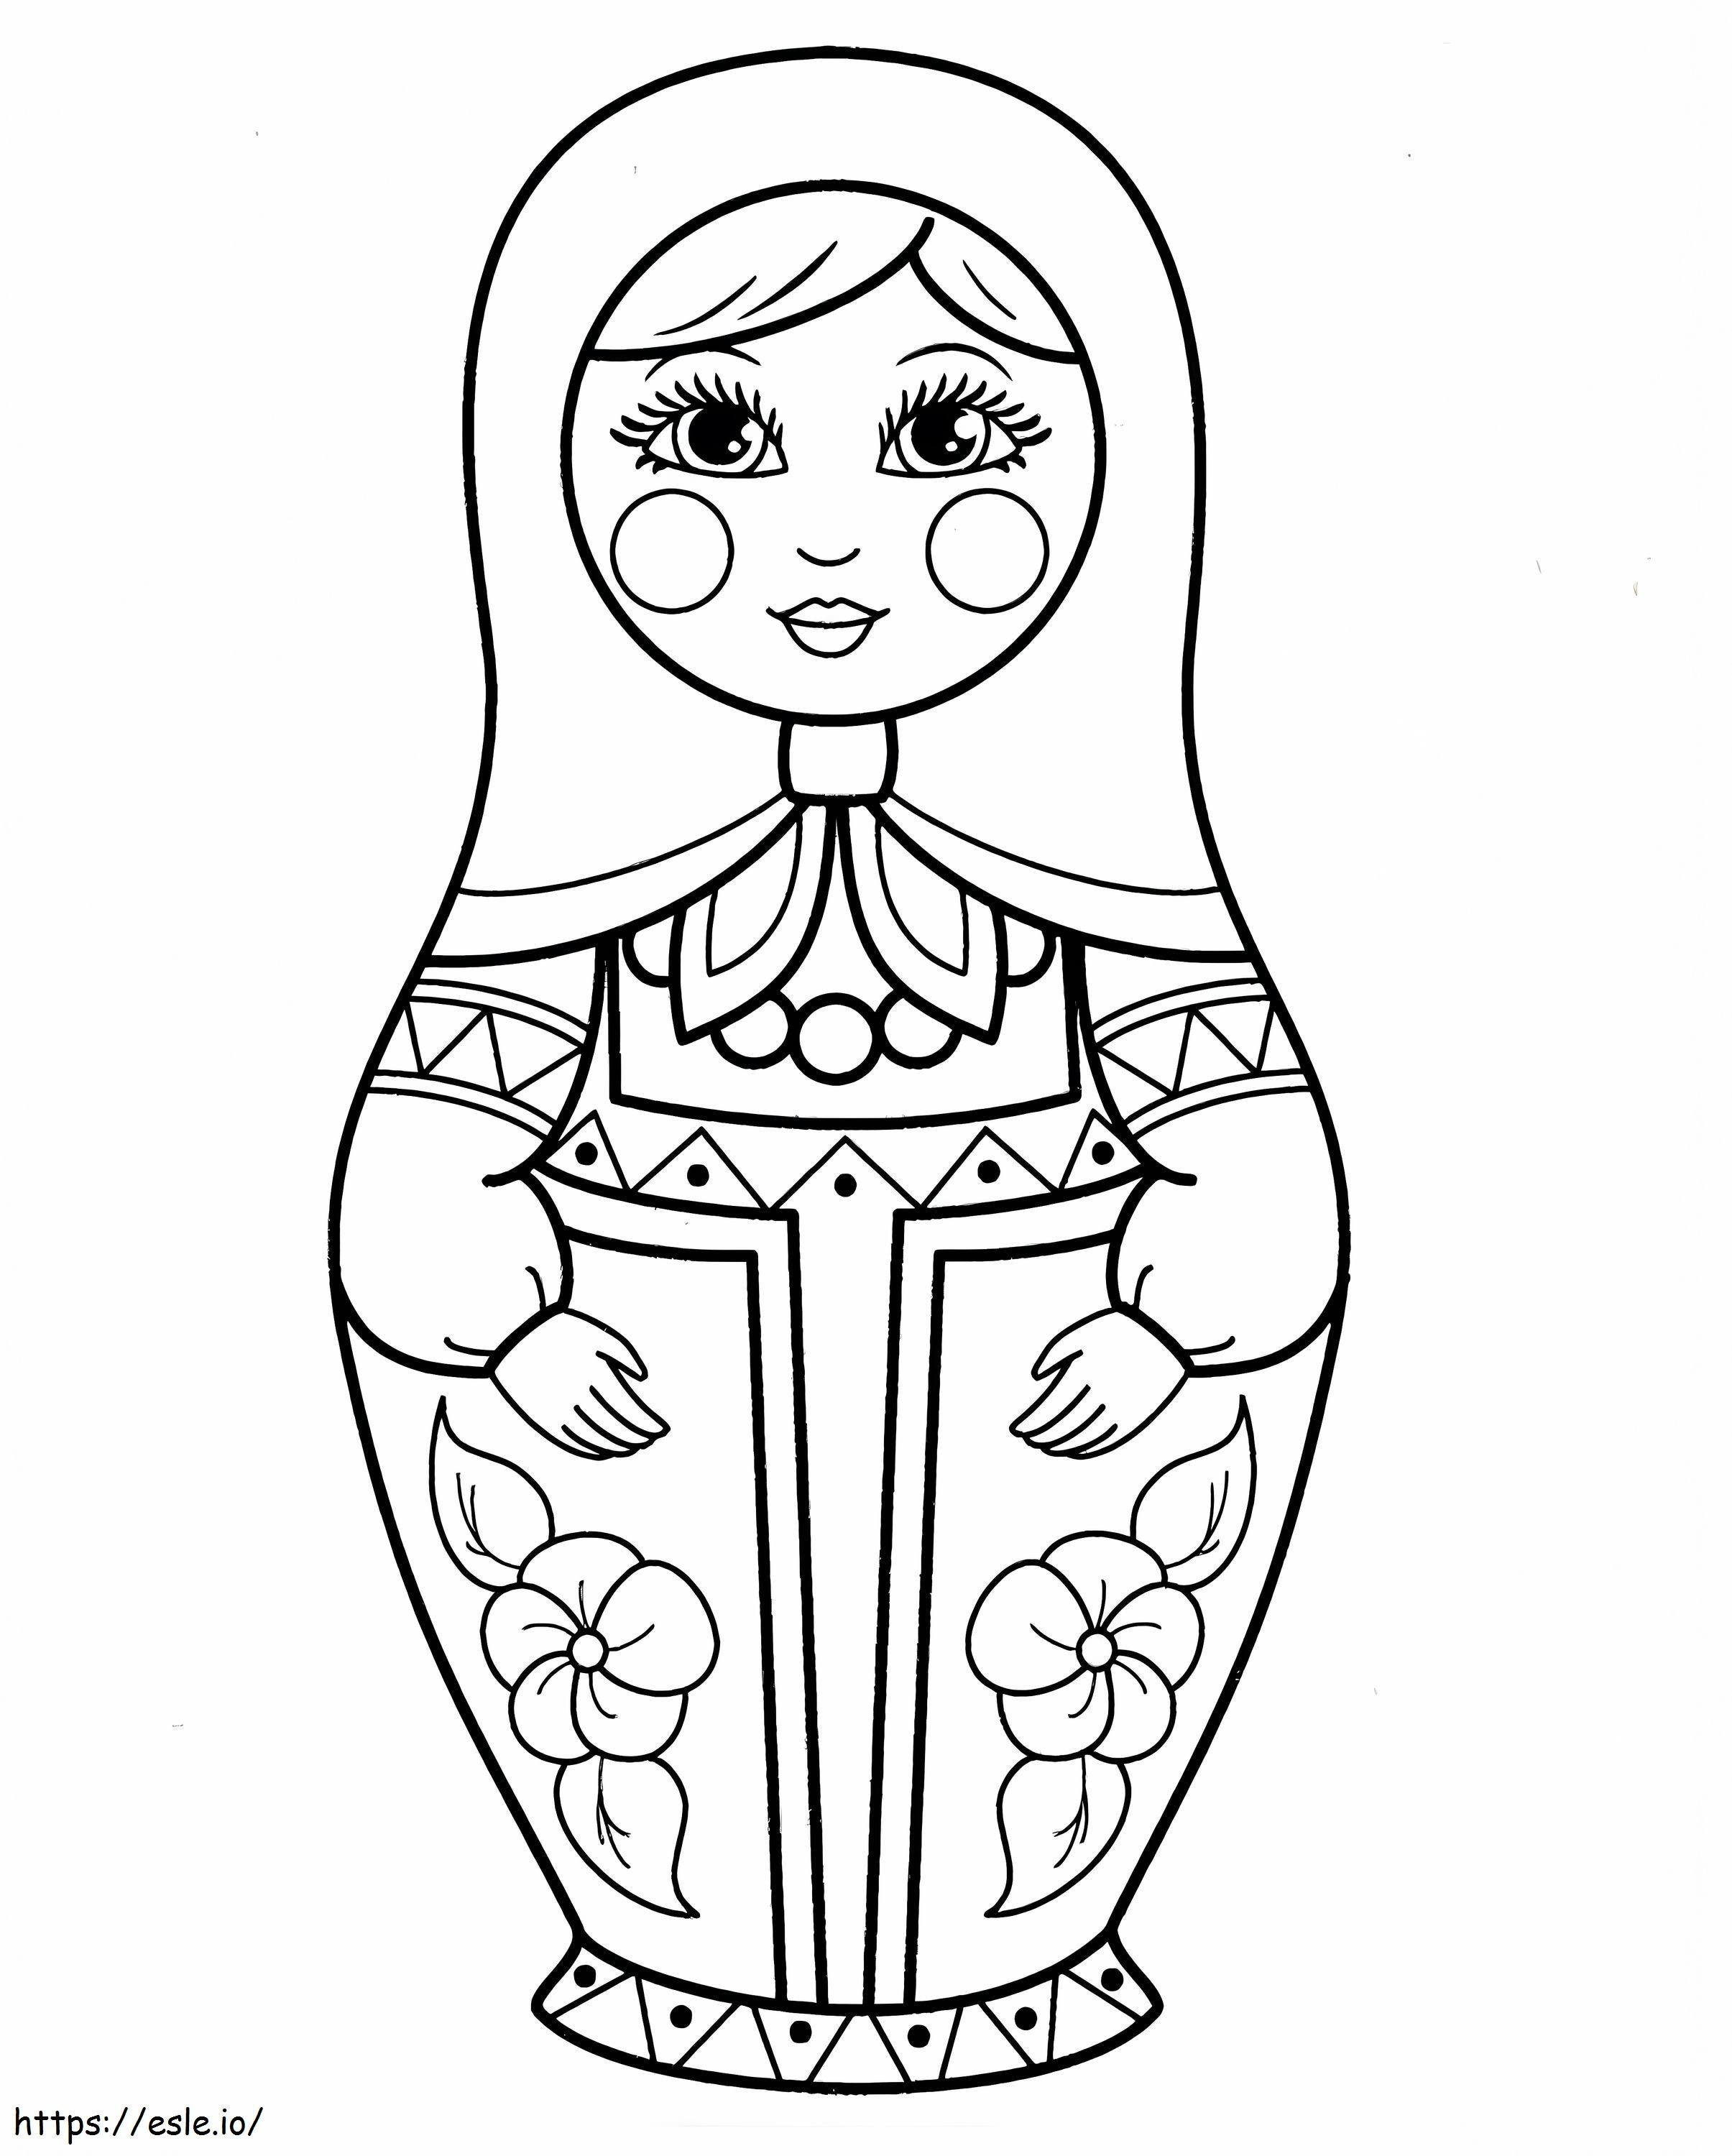 Cute Matryoshka Doll coloring page